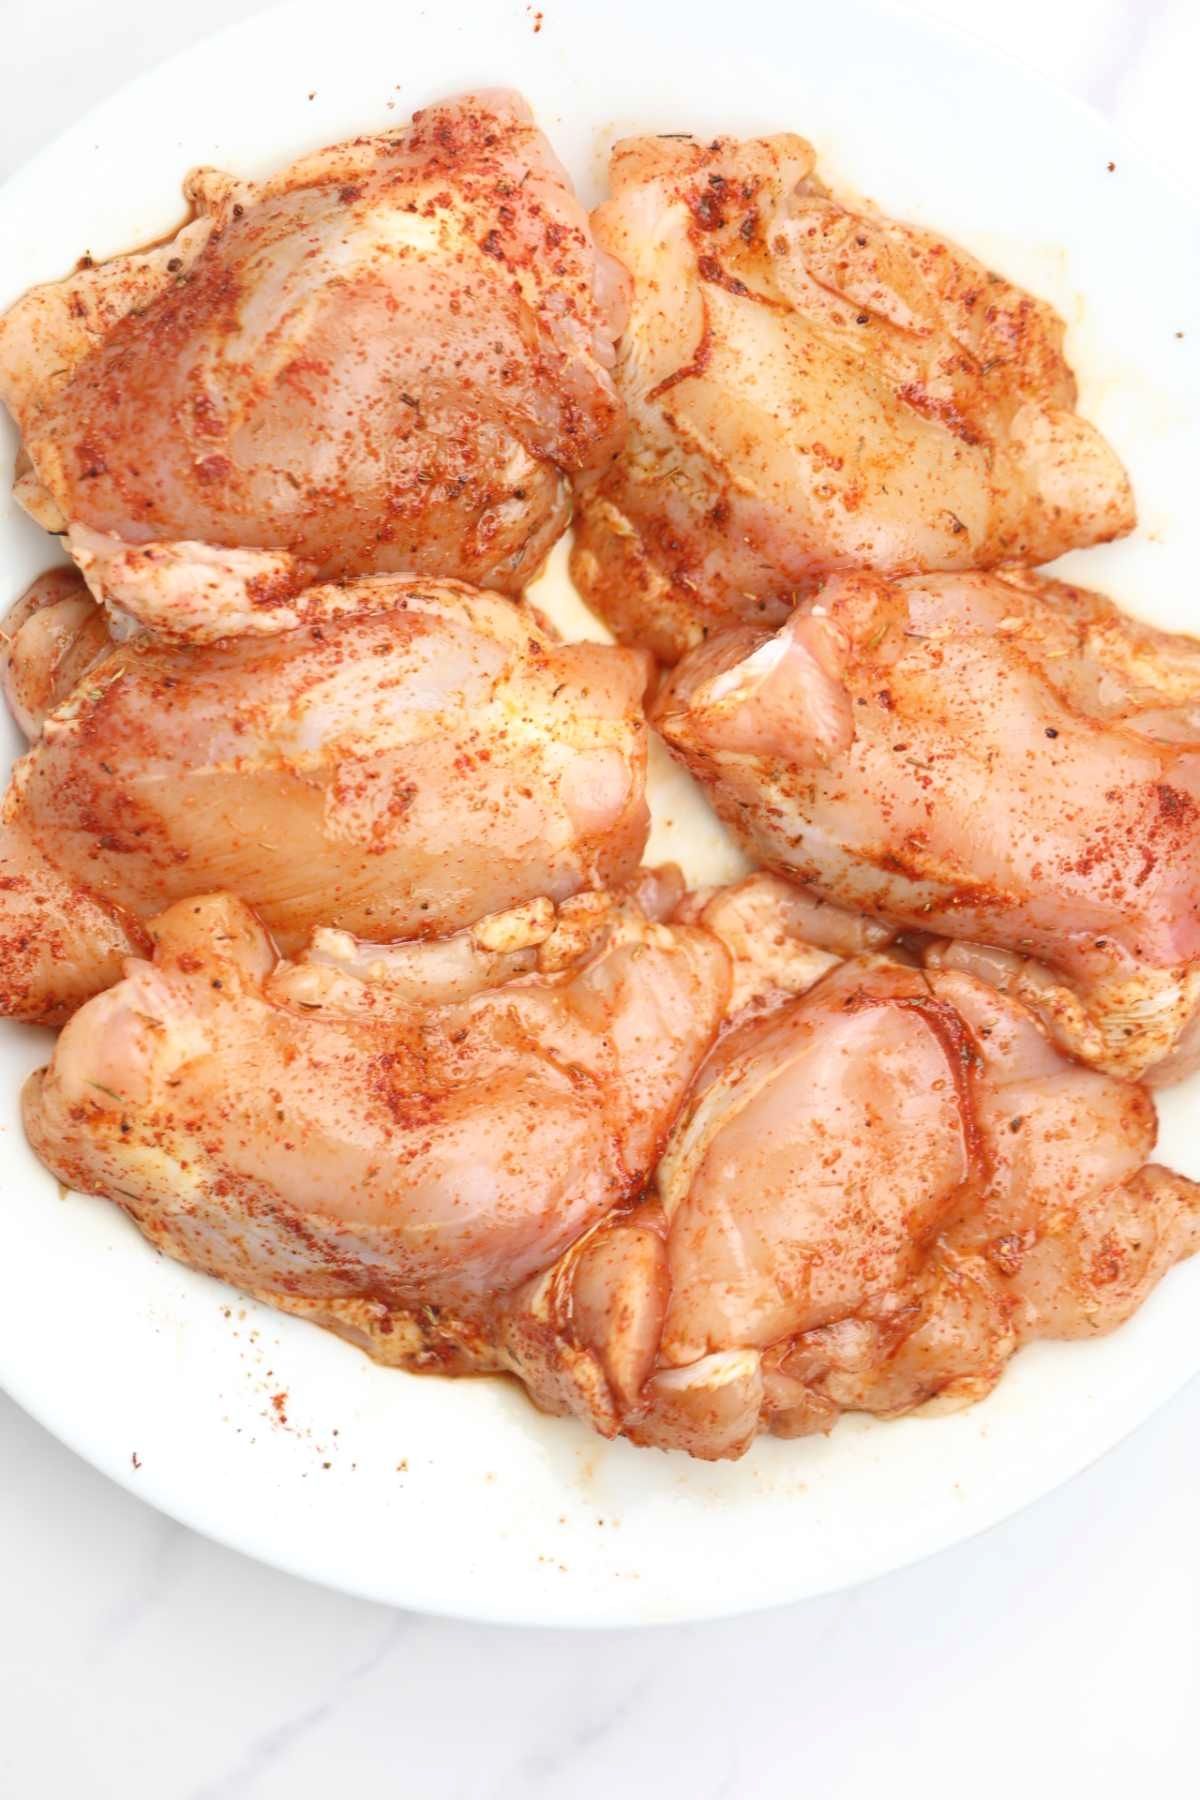 seasoned chicken on a plate.